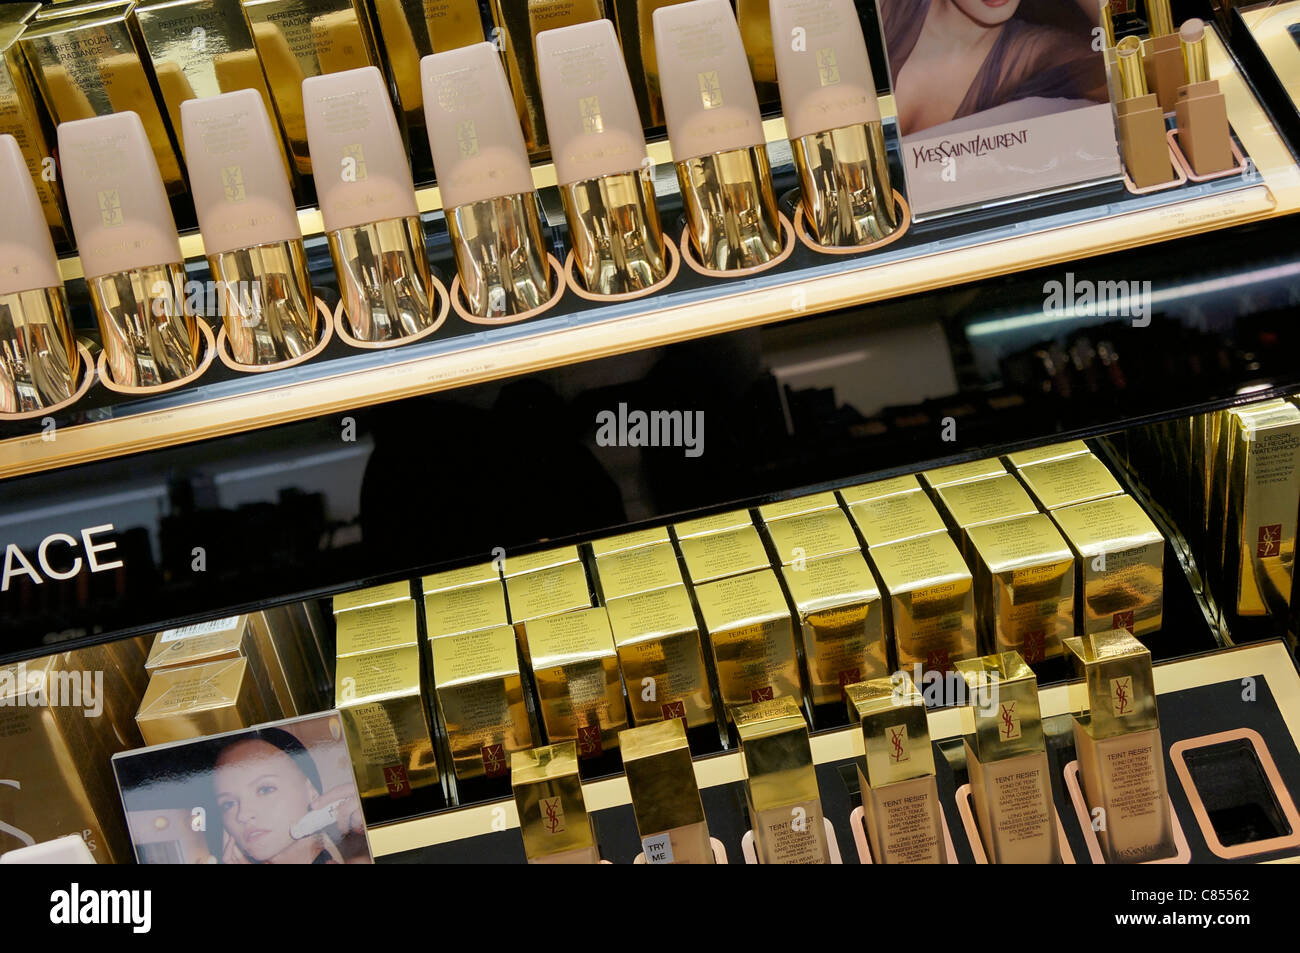 Kosmetik-Display in einem Kosmetik-shop Stockfoto